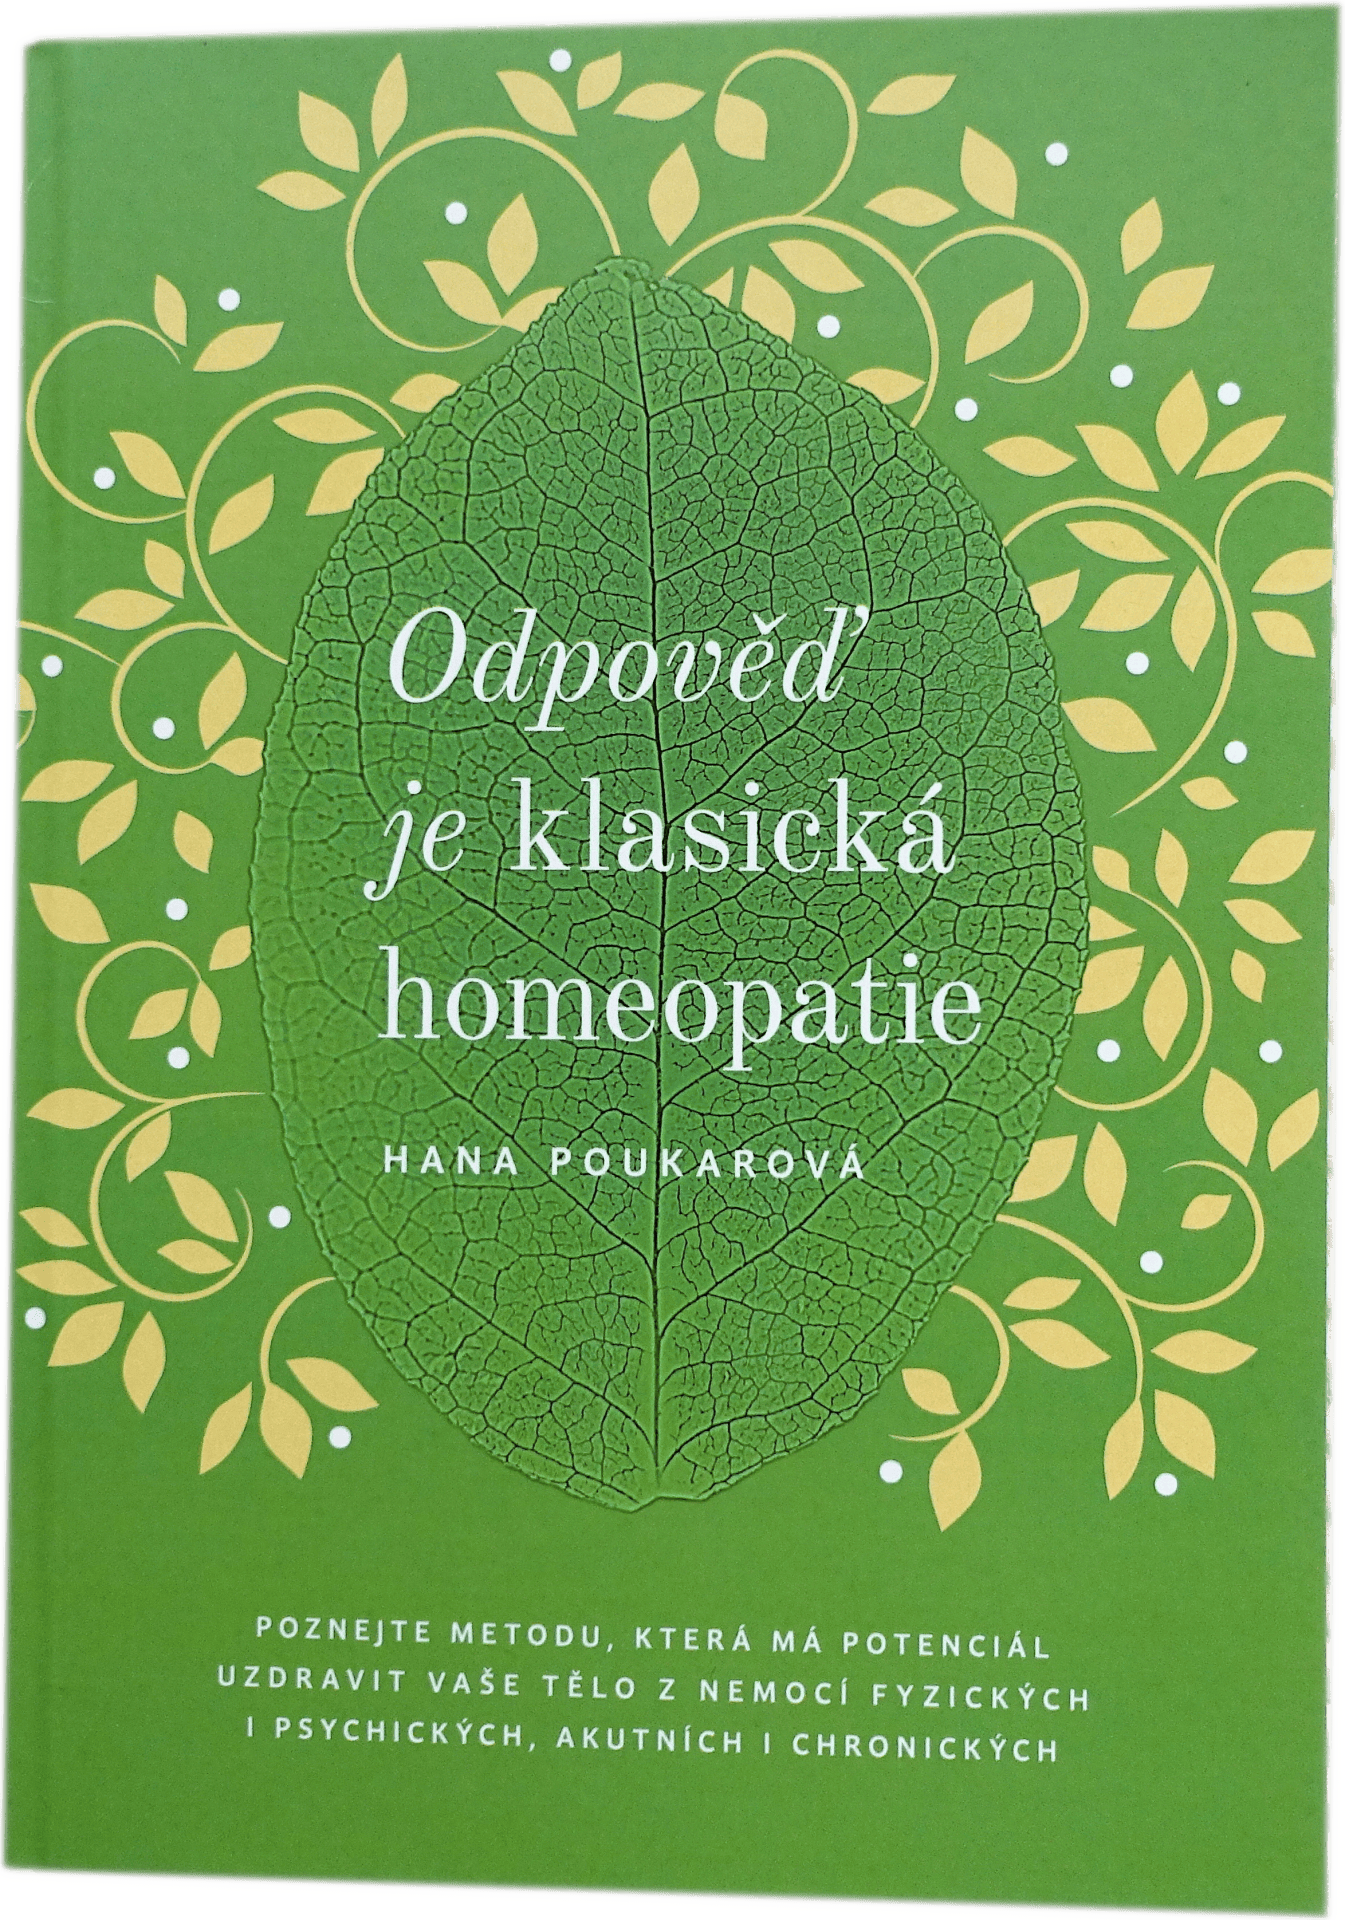 Cover knihy "Odpověď je klasická homeopatie", jejíž autorkou je Hana Poukarová